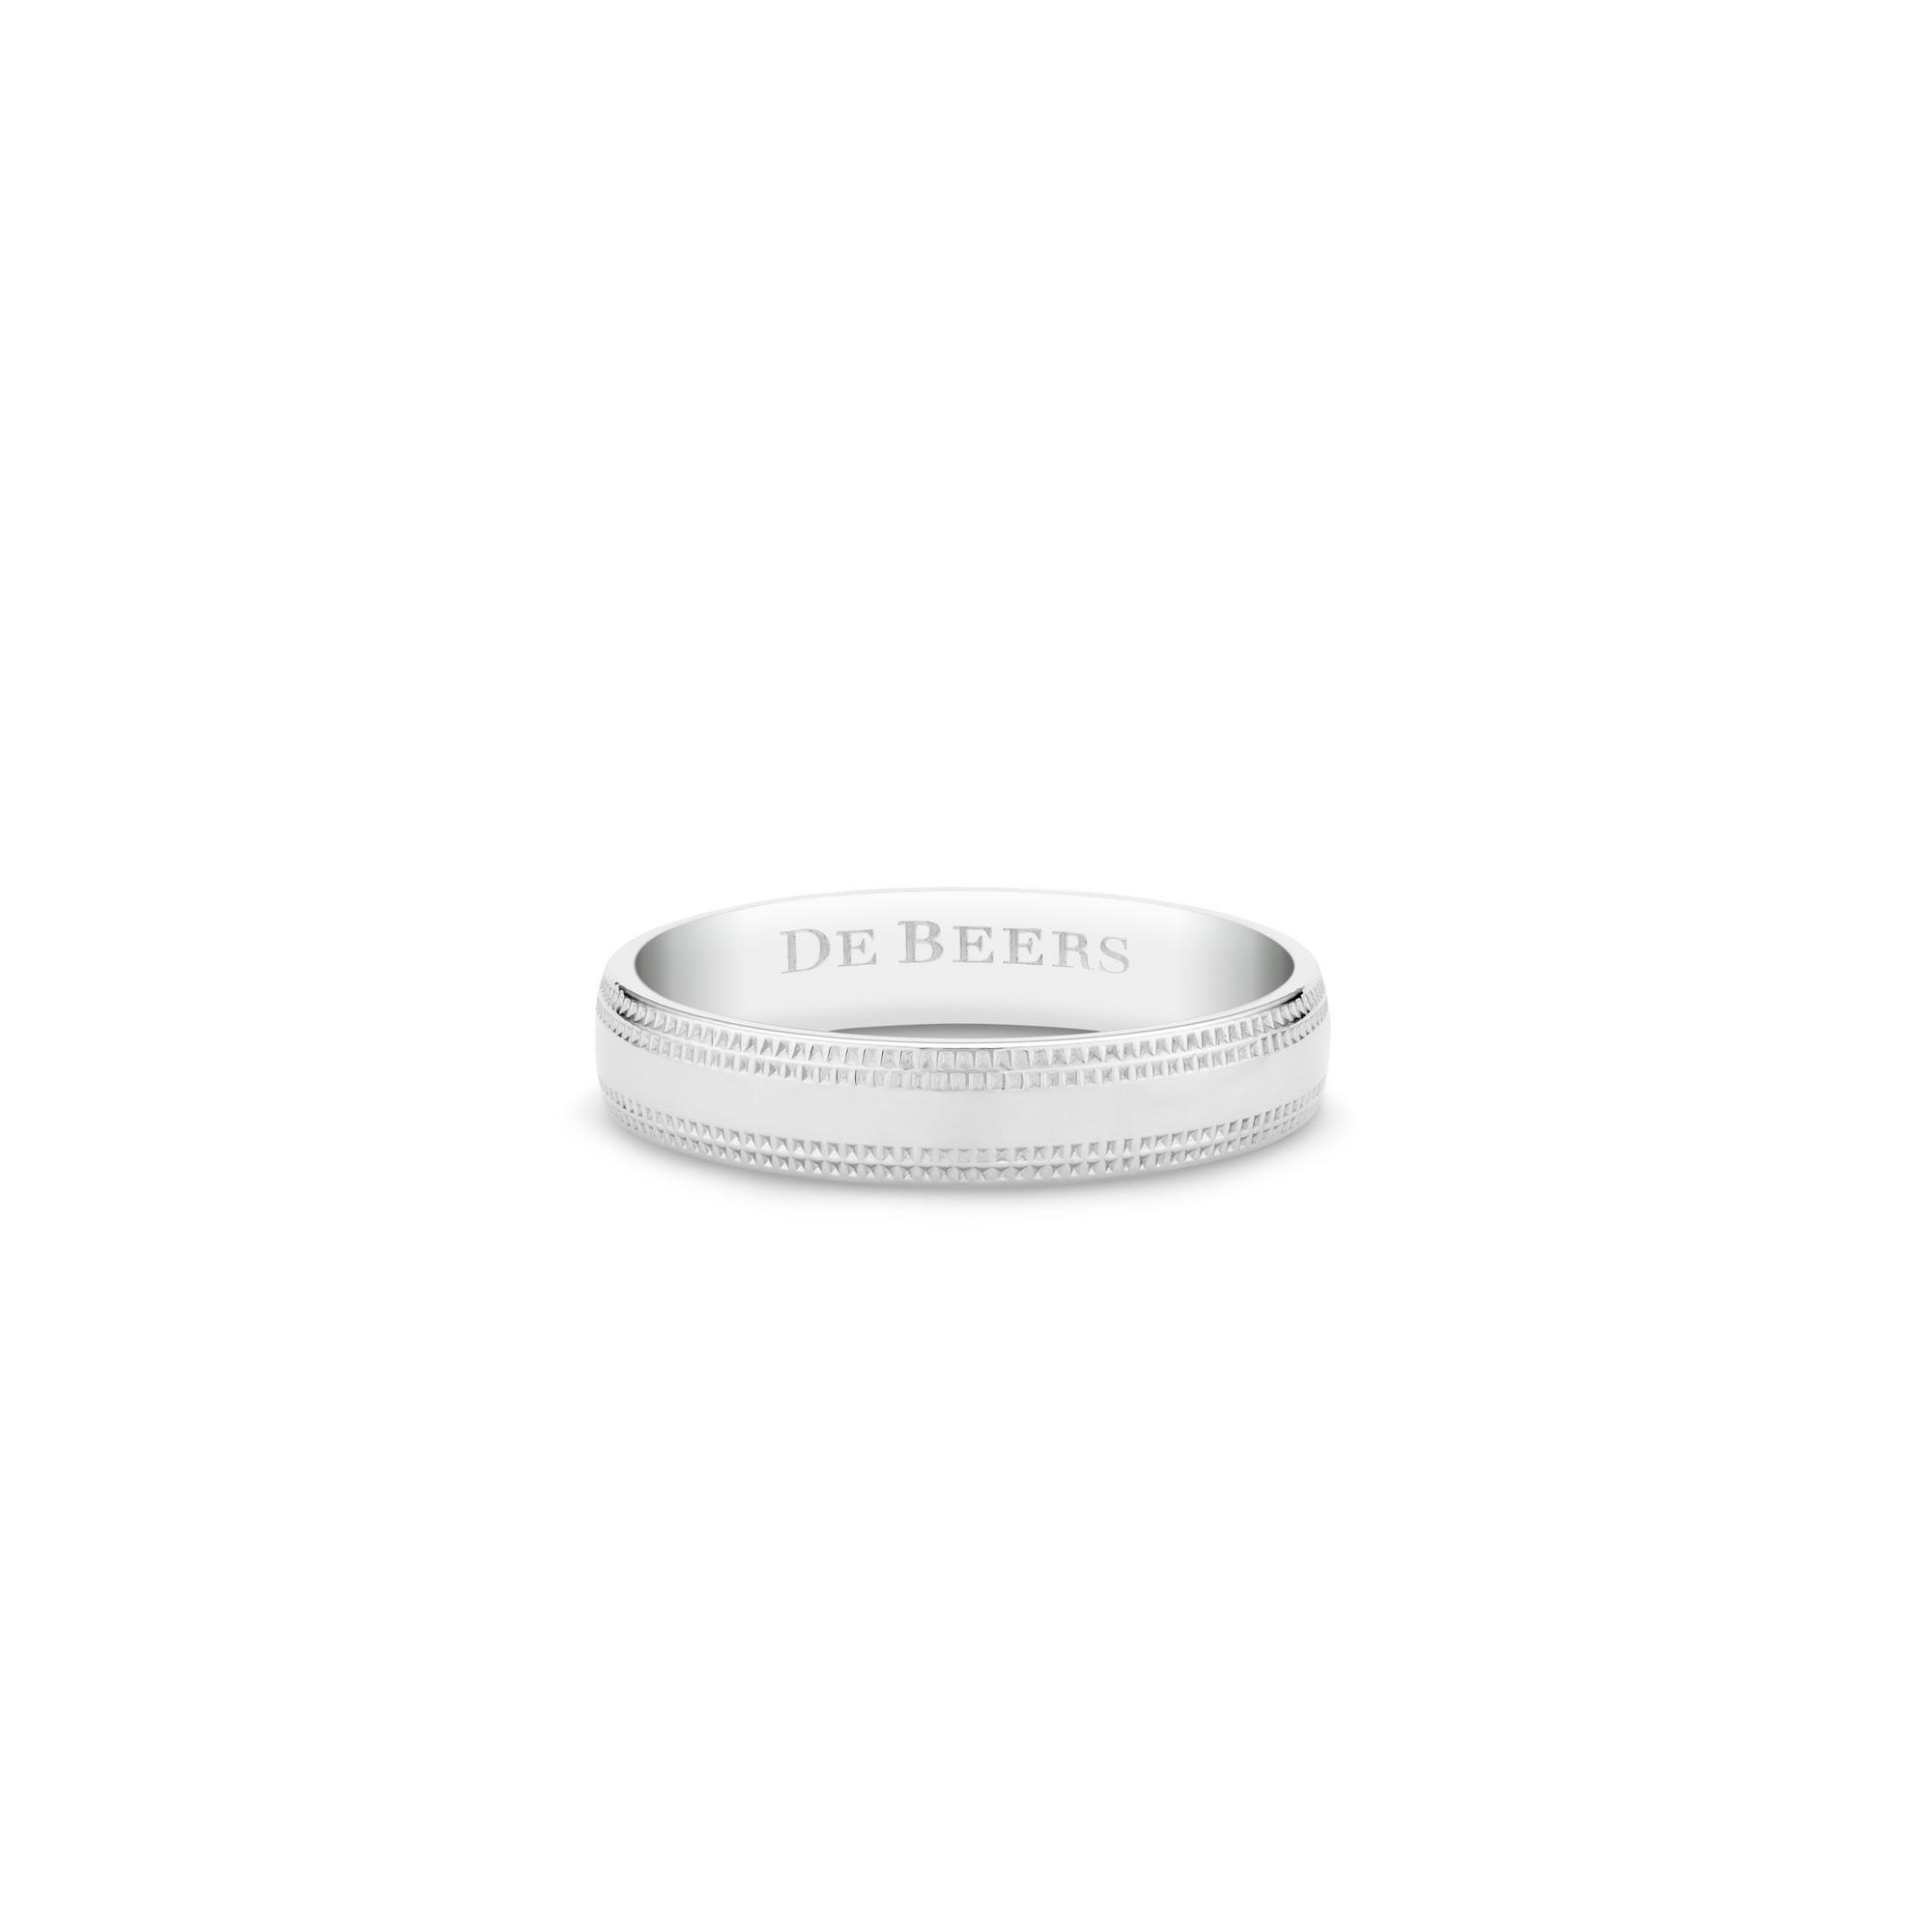 DE BEERS-WIDE COURT 鉑金鑿點金工戒指 (4MM)